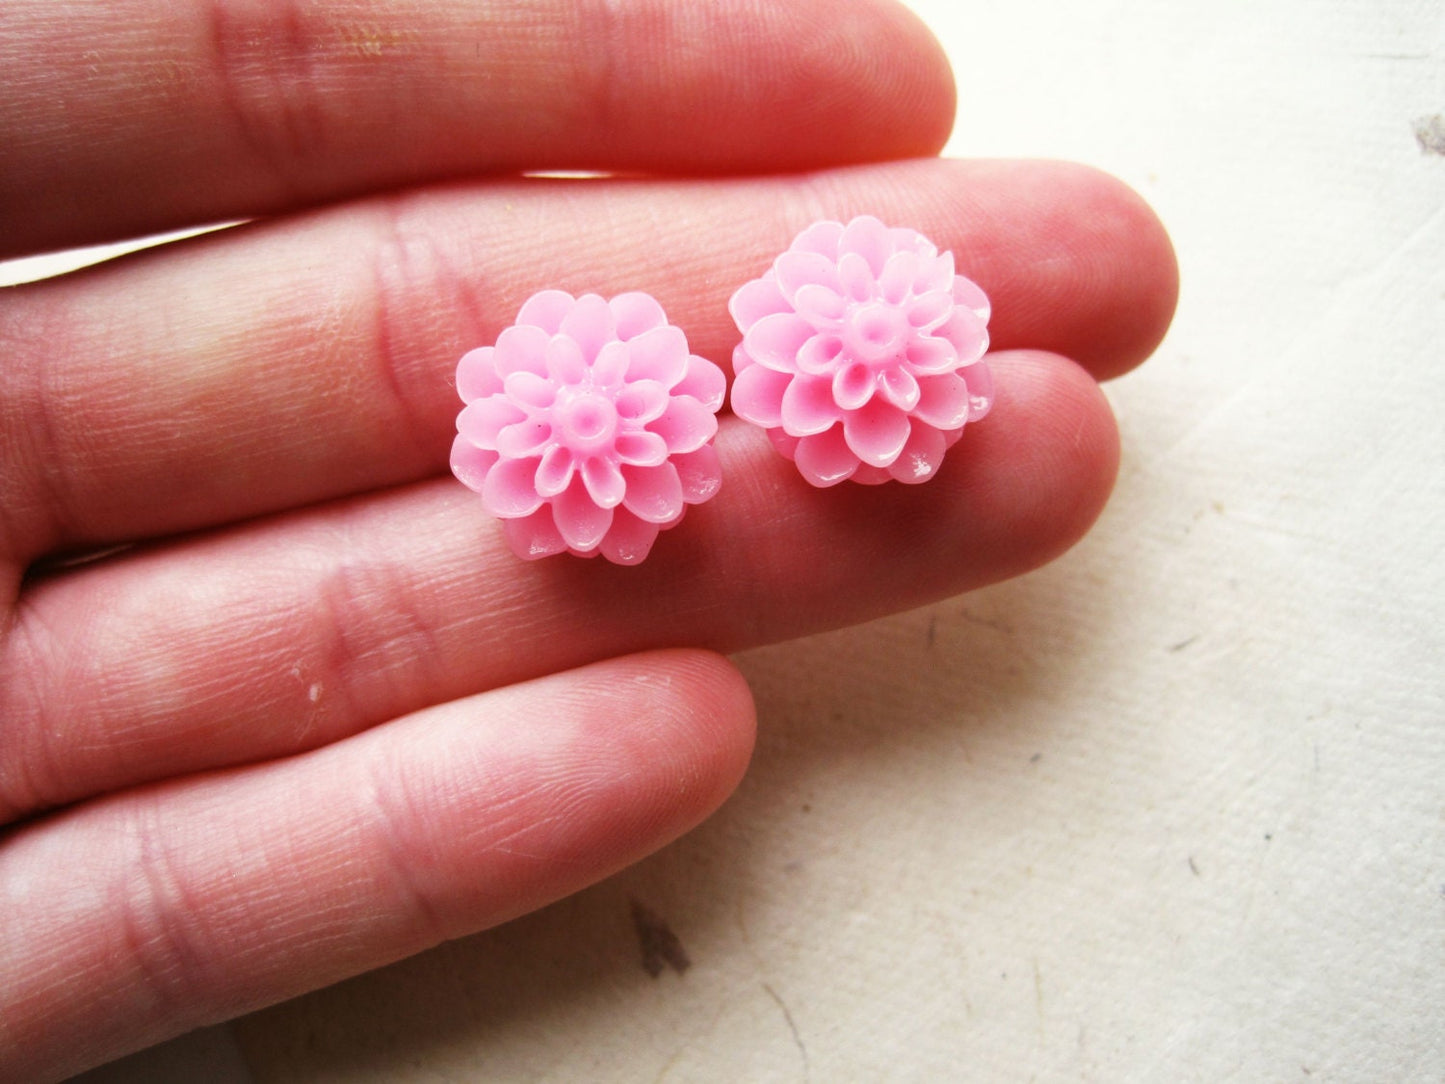 Pink Flower Earrings, Dahlia Earrings, Resin Flower Stud Earrings, Pink Lemonade, Big Earring Studs in Bright Pink, Cute Floral Earrings